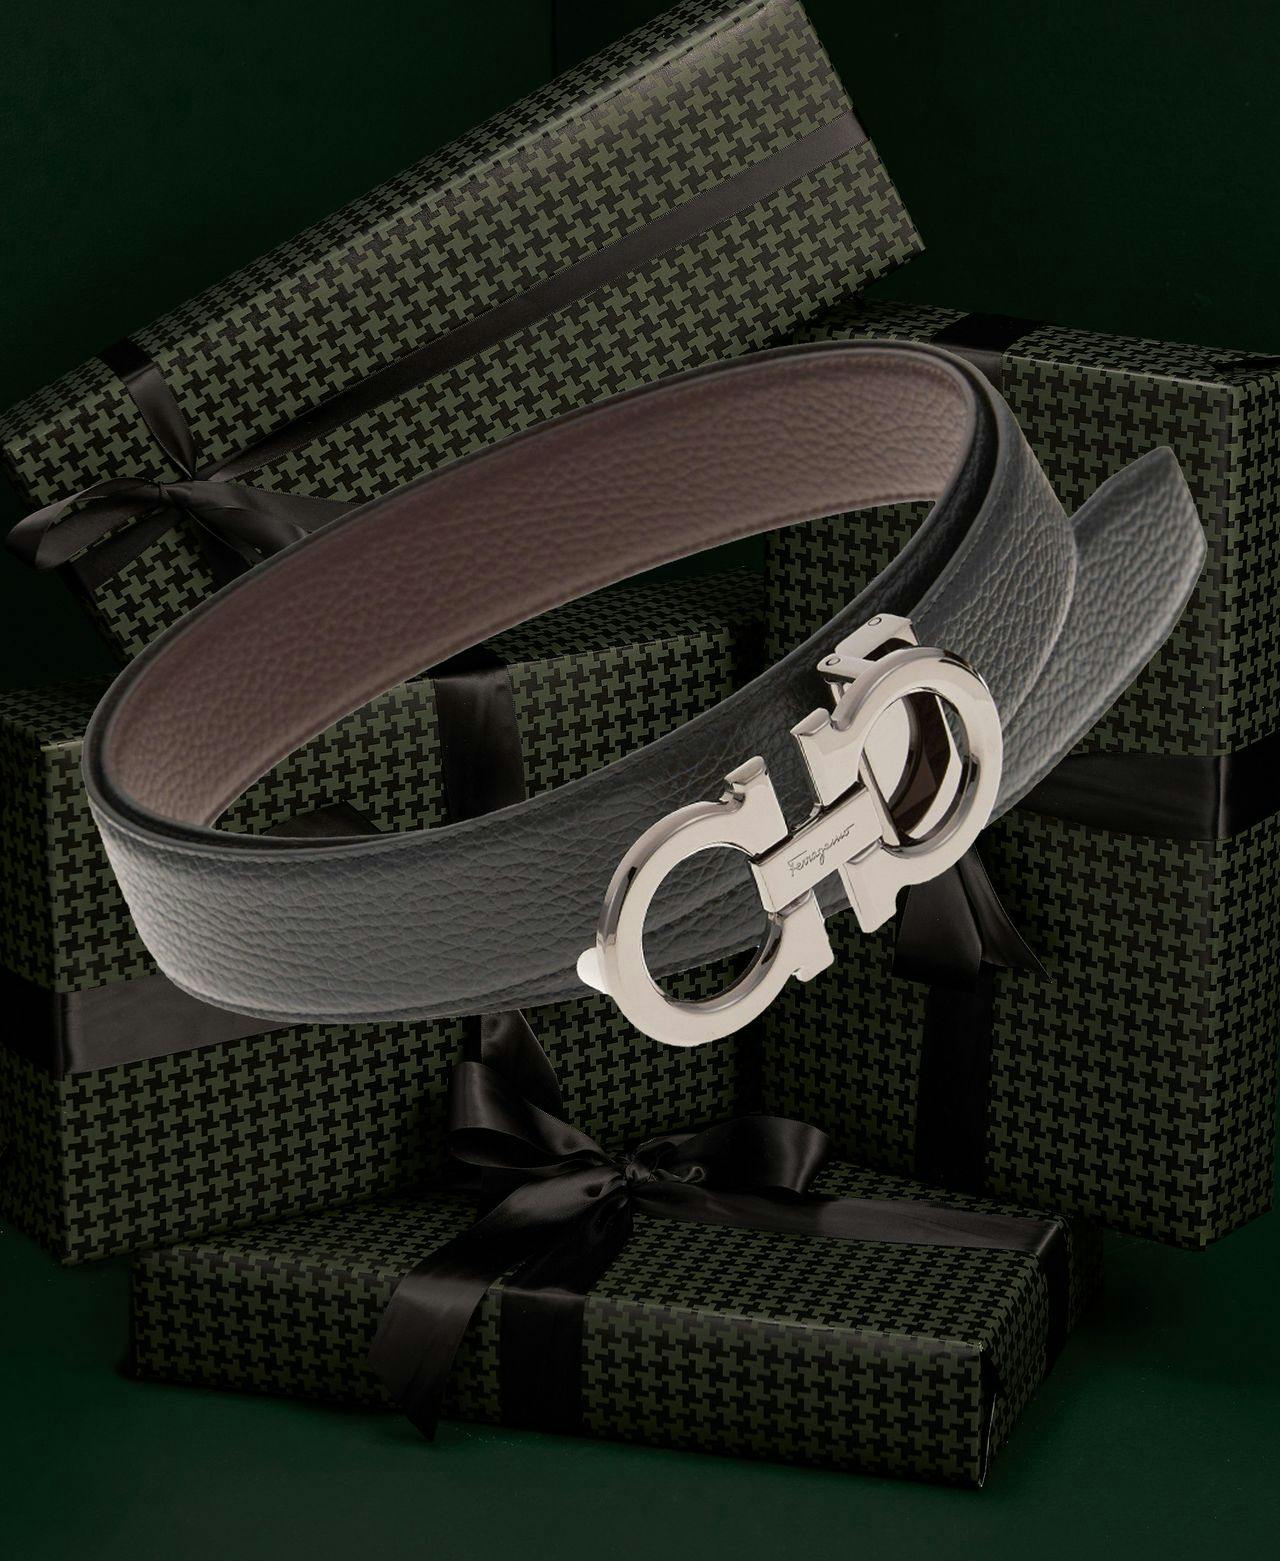 Double Gancini Reversible Leather Belt by Ferragamo in dark green setting